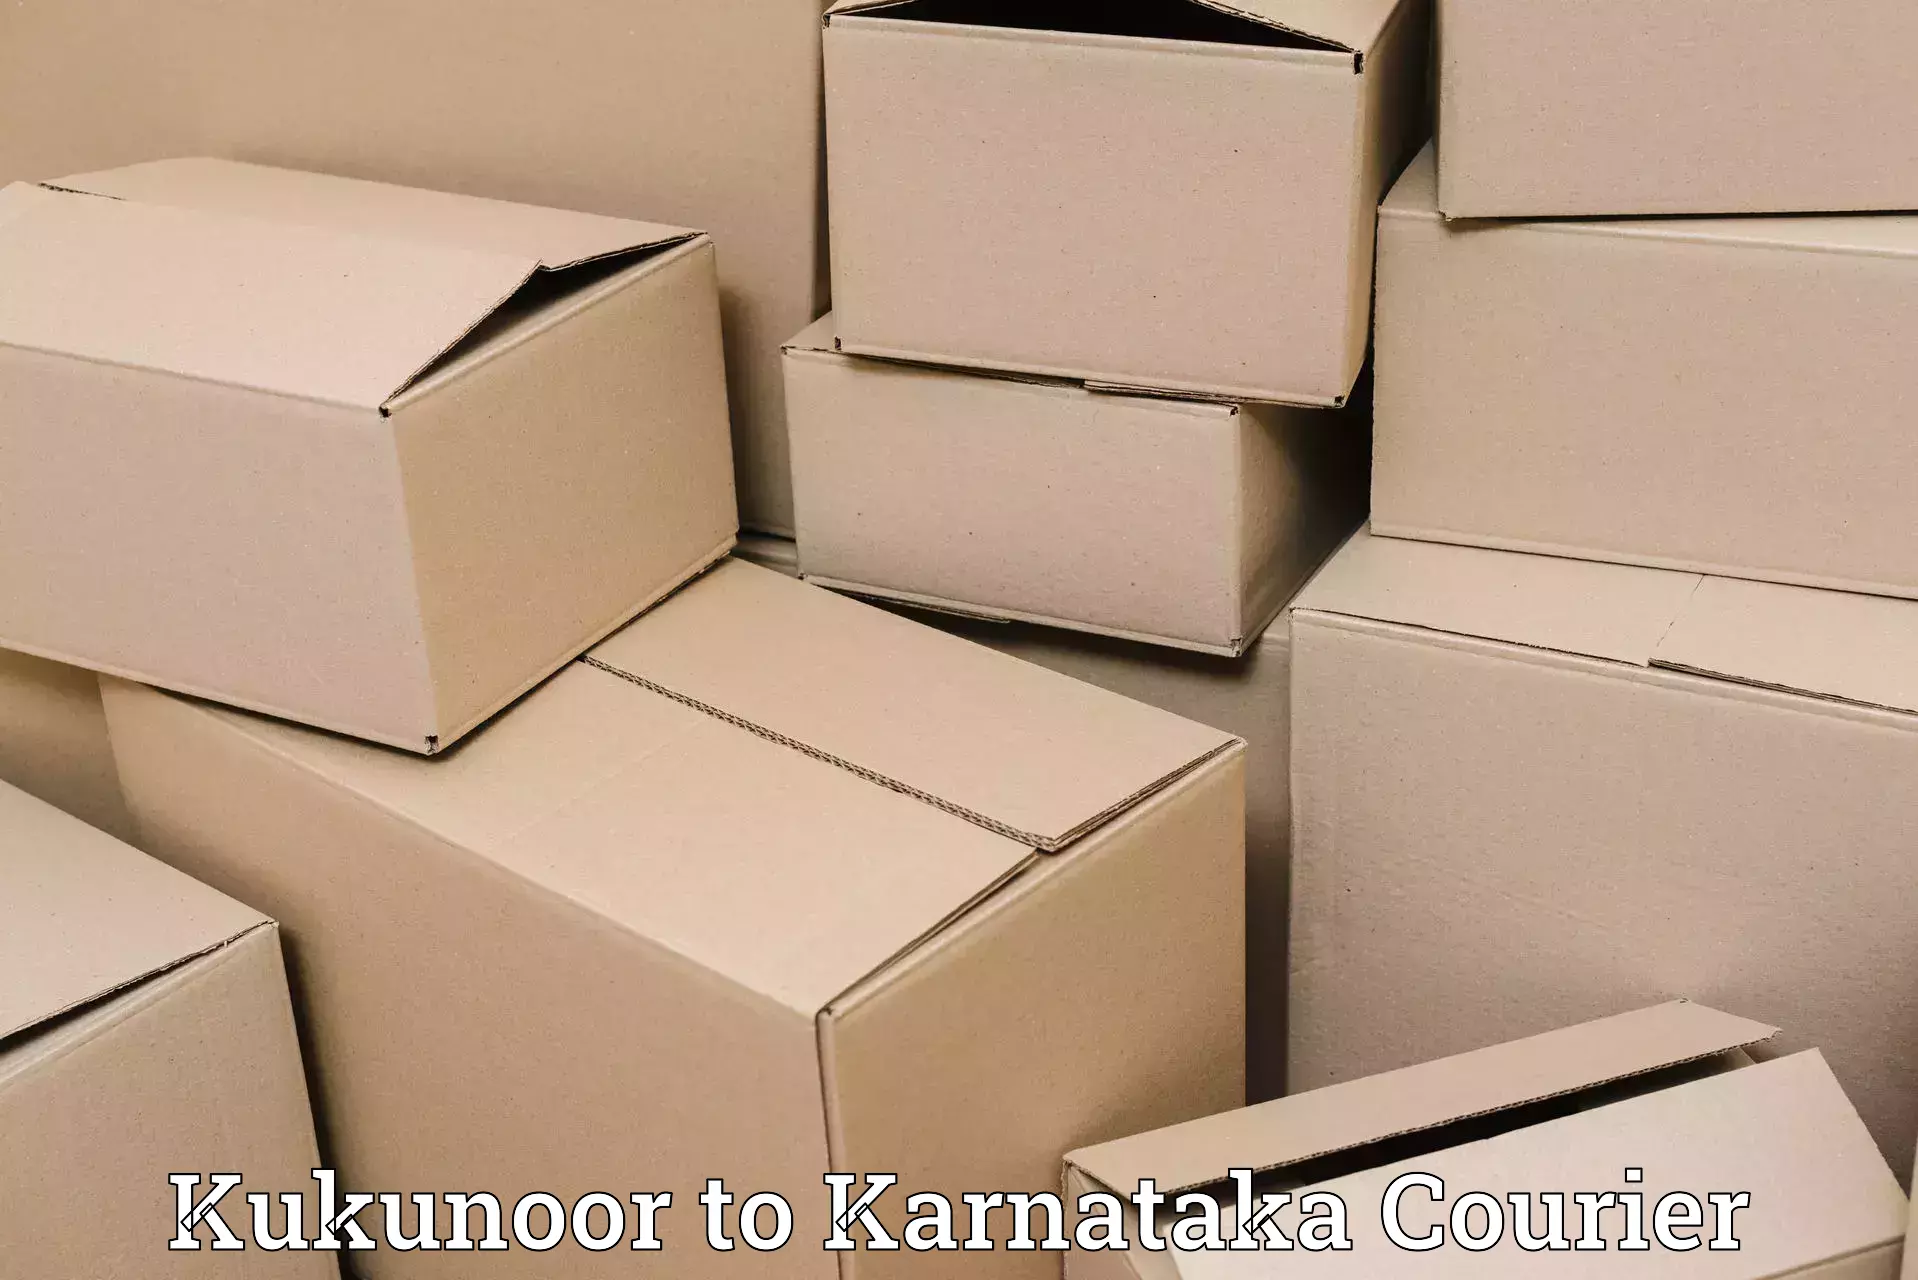 Specialized shipment handling Kukunoor to Nanjangud